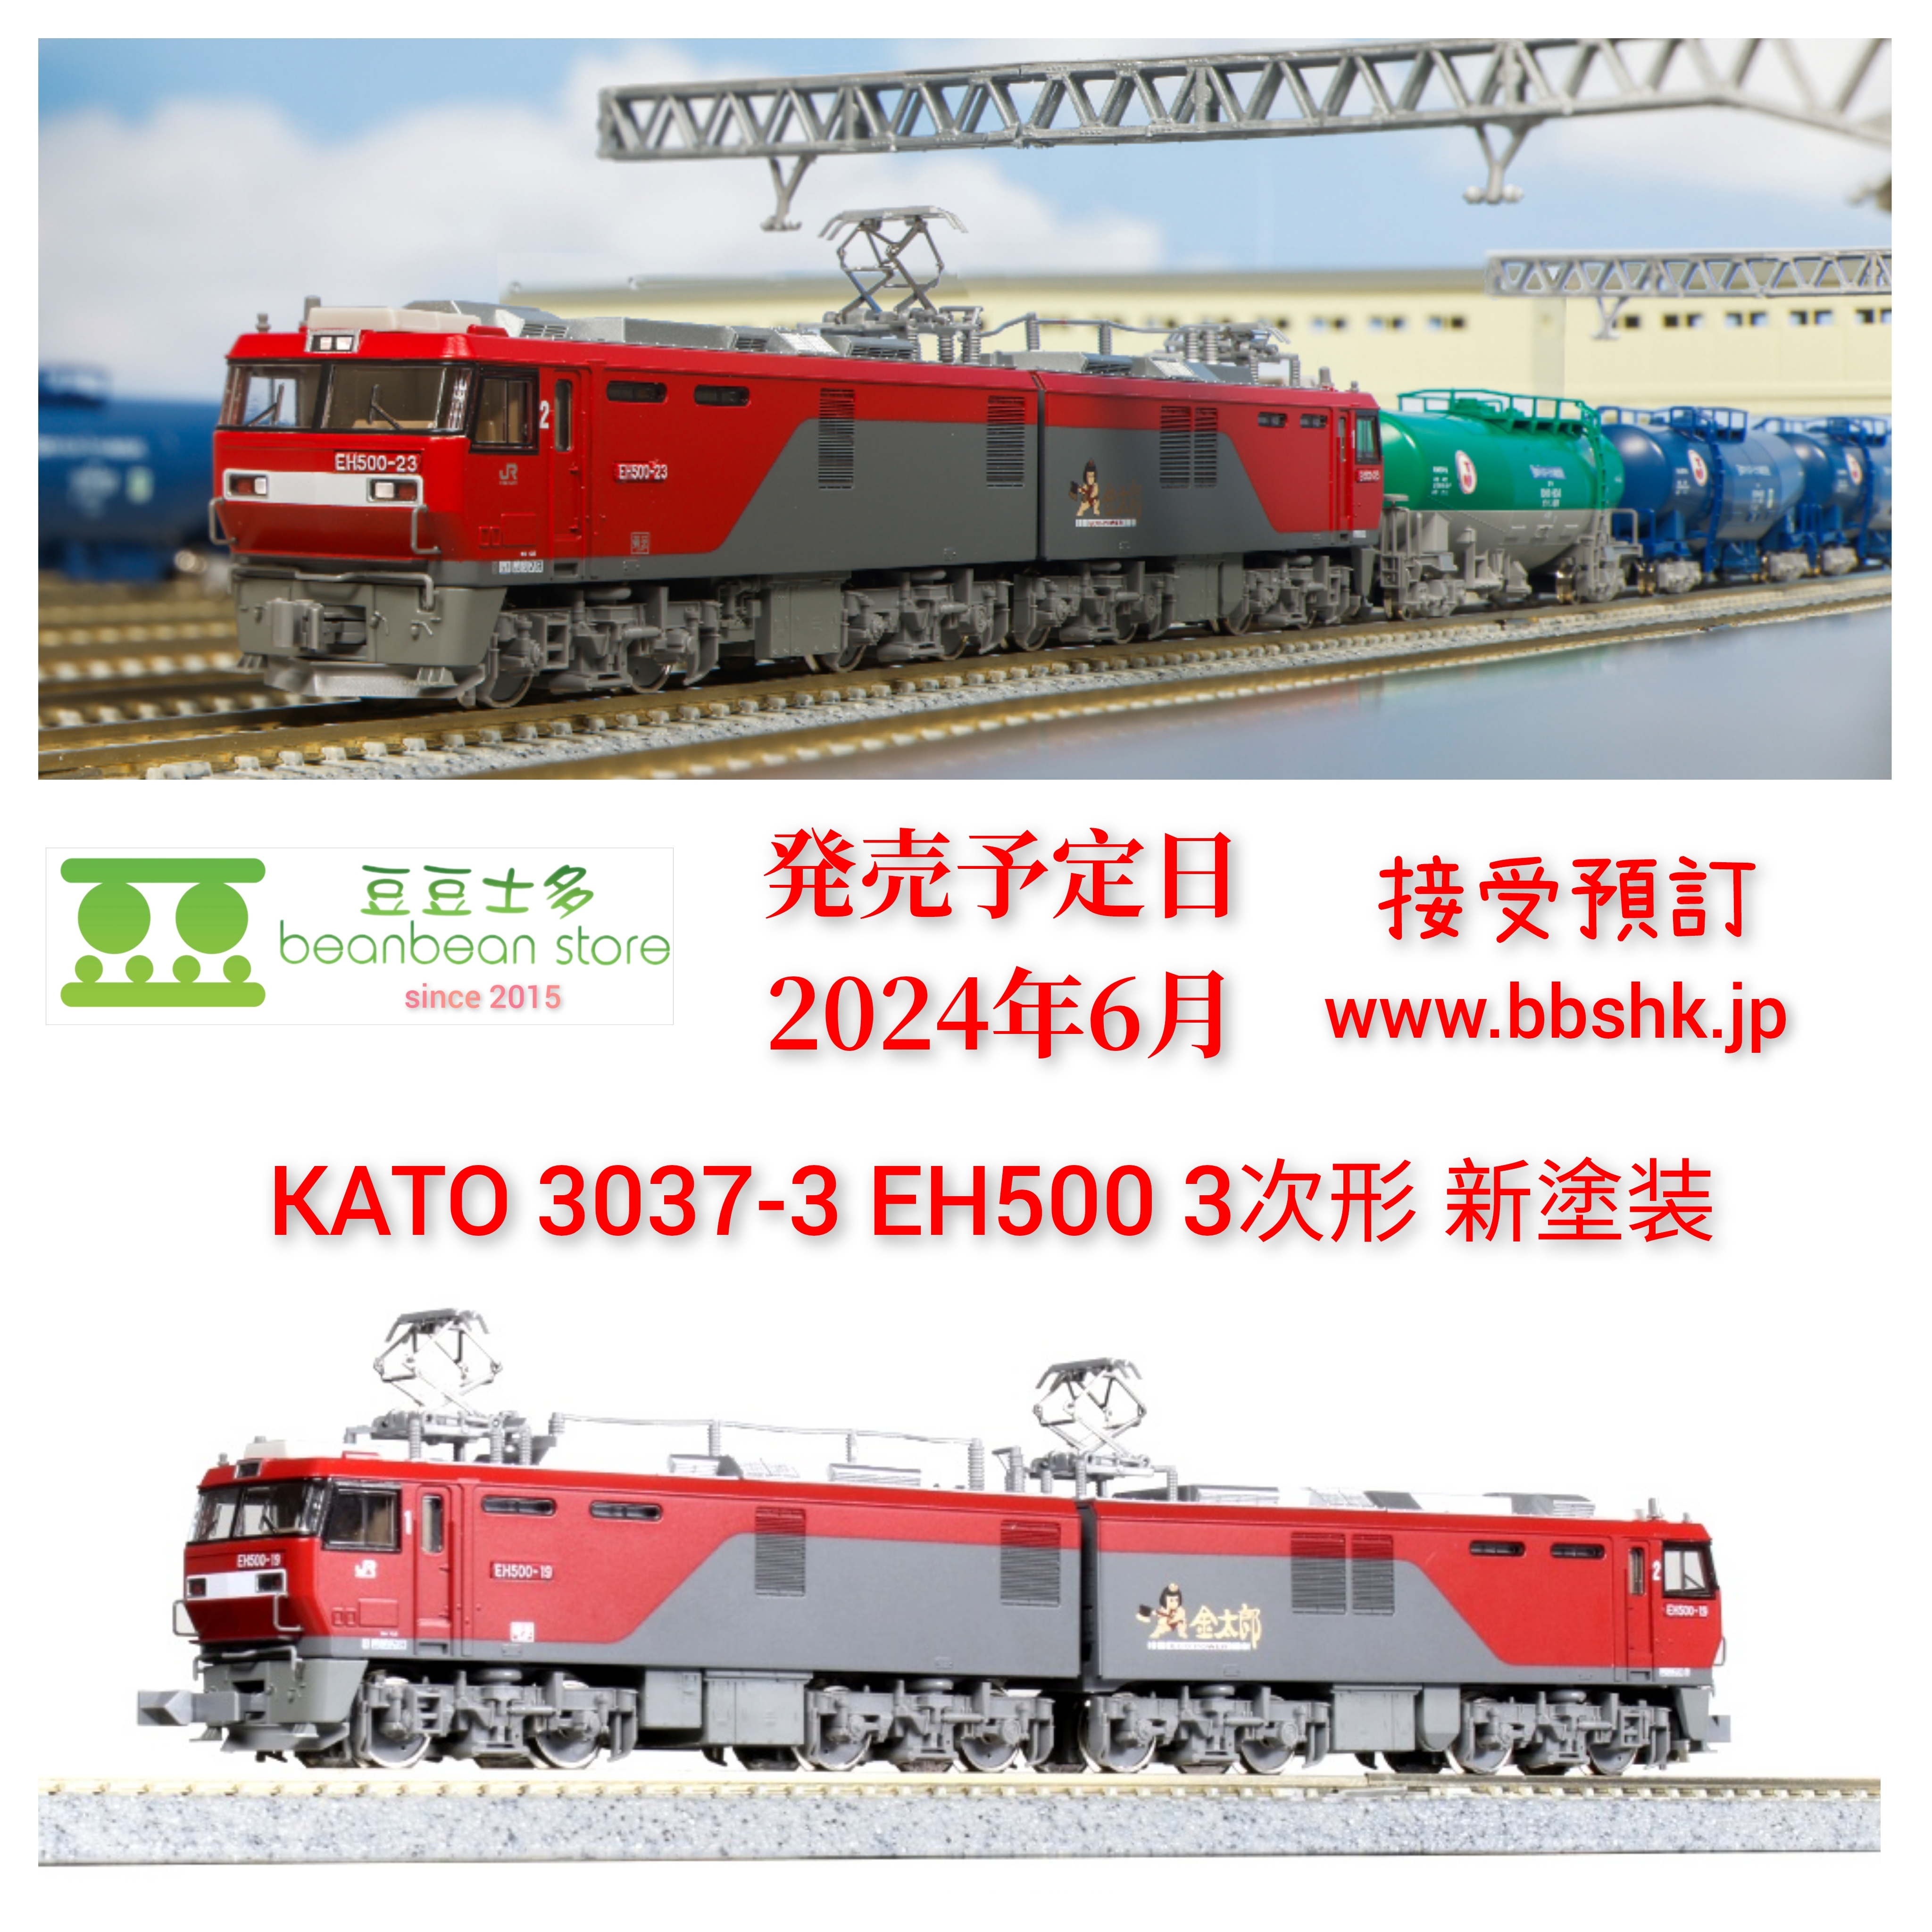 KATO 3037-3 EH500 3次形新塗装